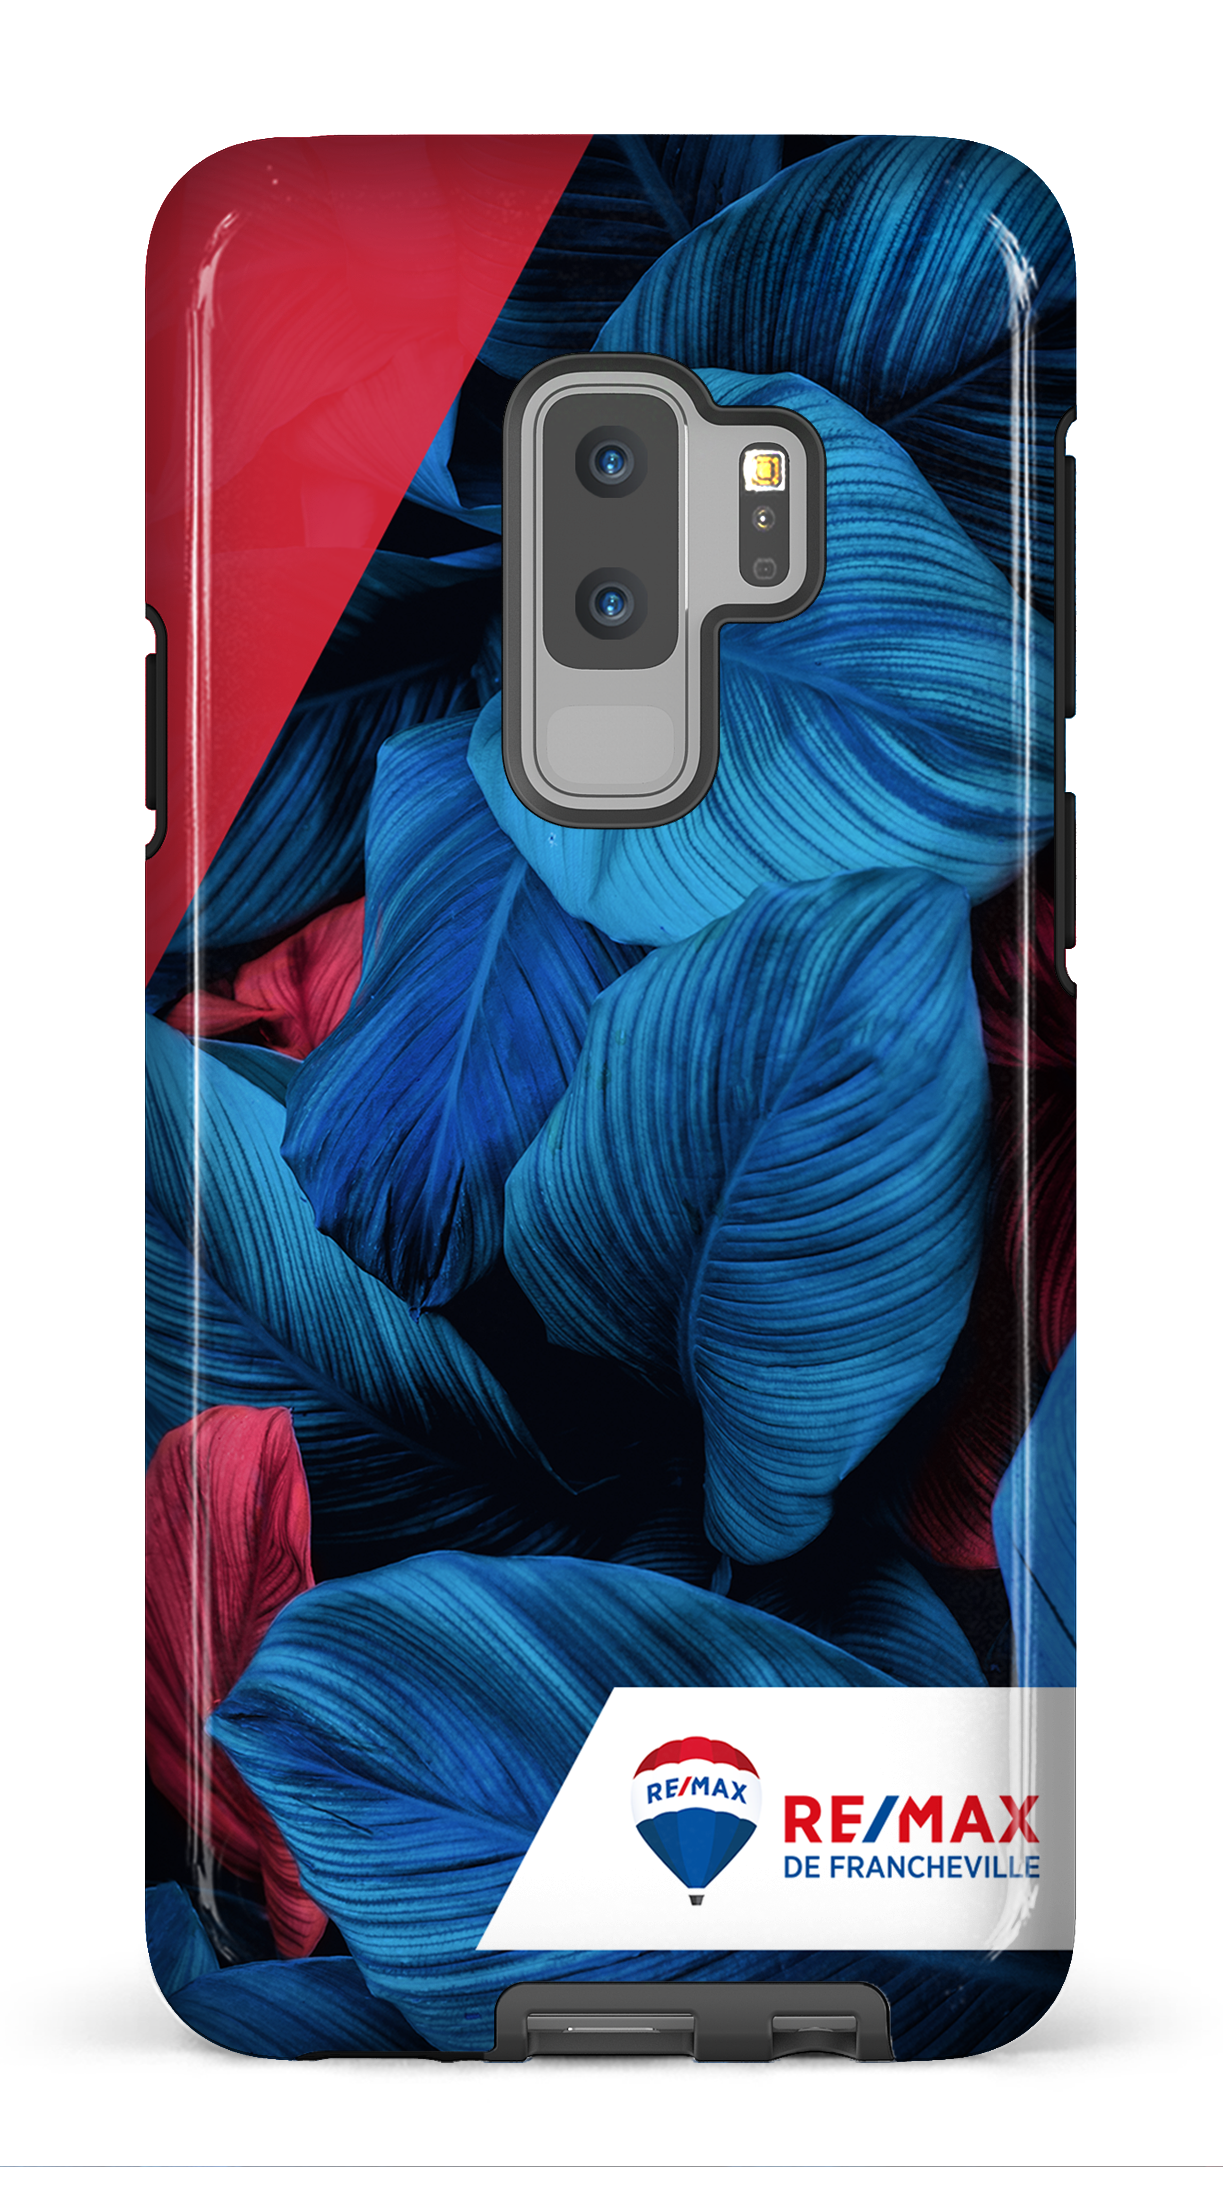 Végétation bicolorede Francheville - Galaxy S9 Plus